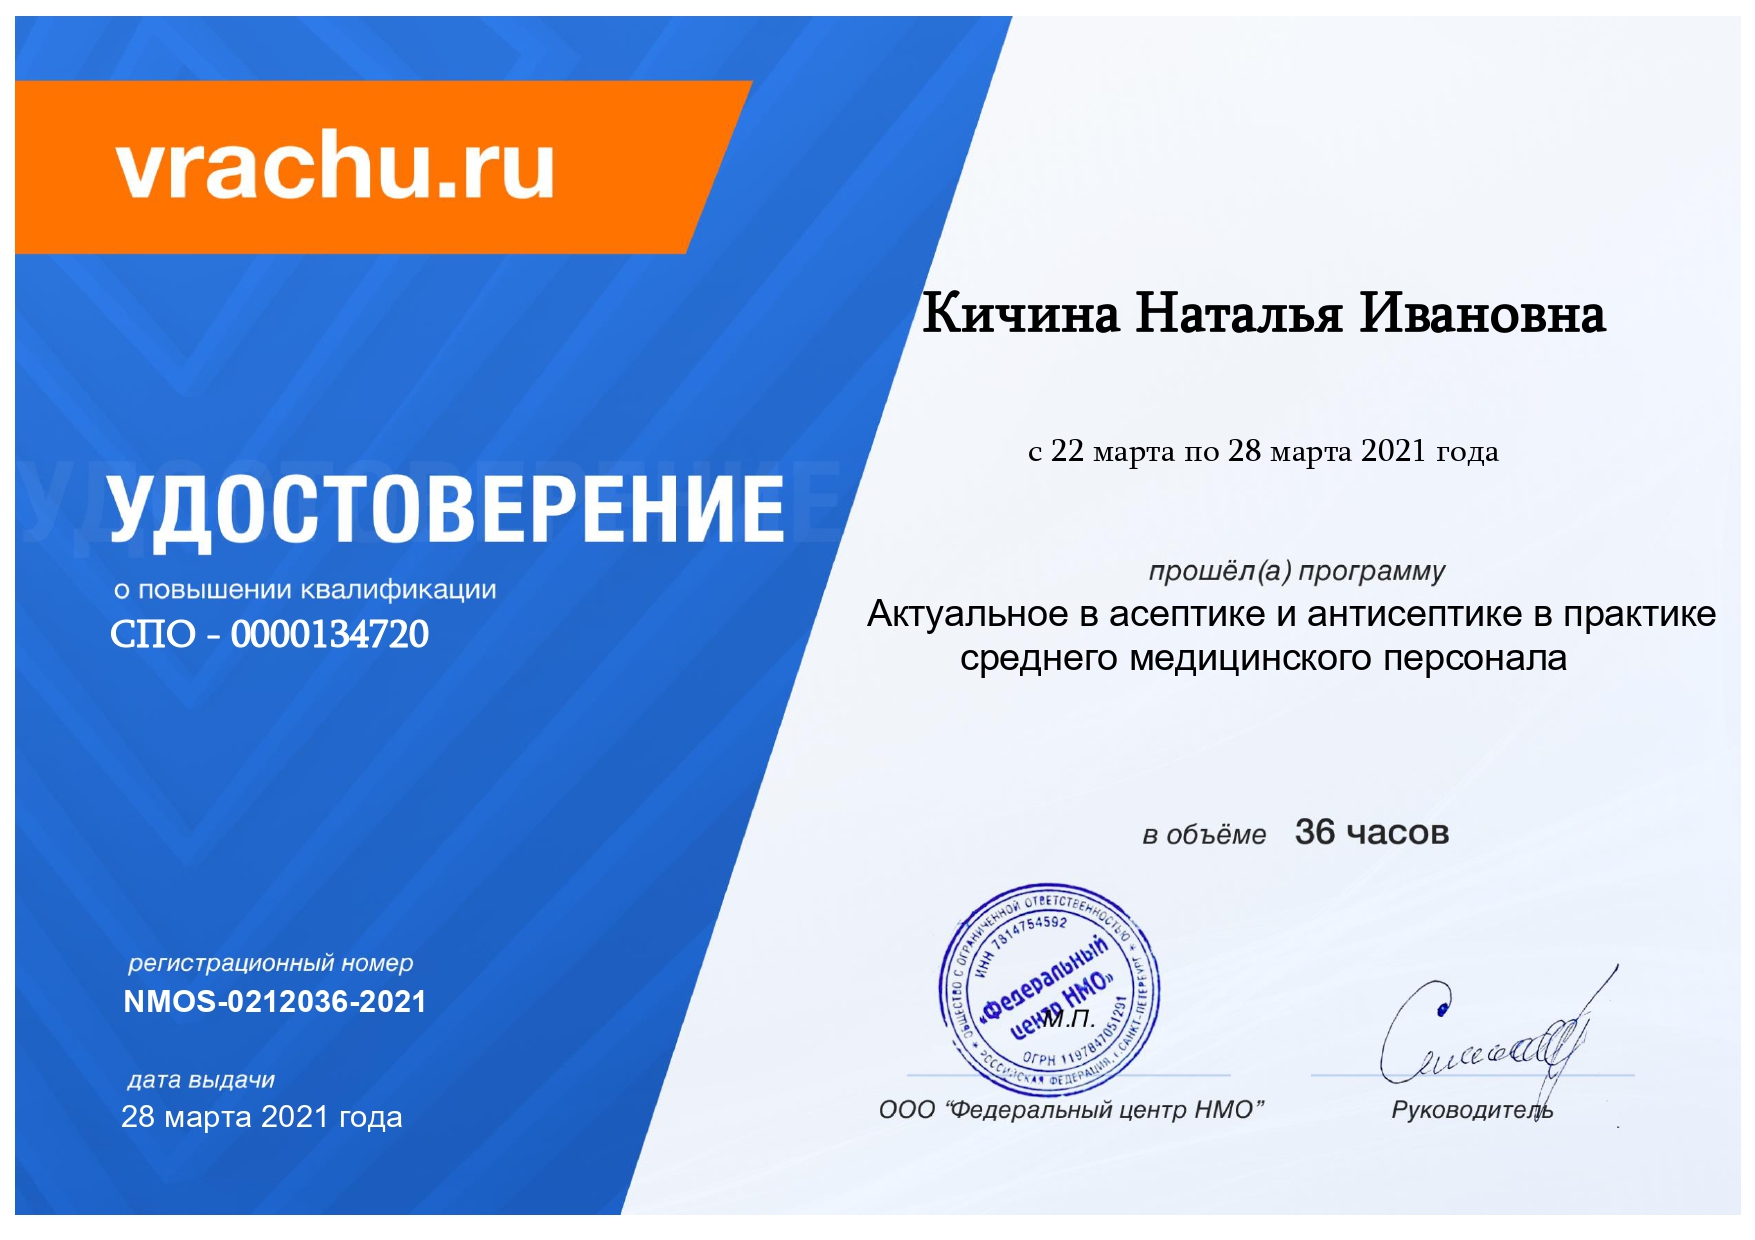 сртификат